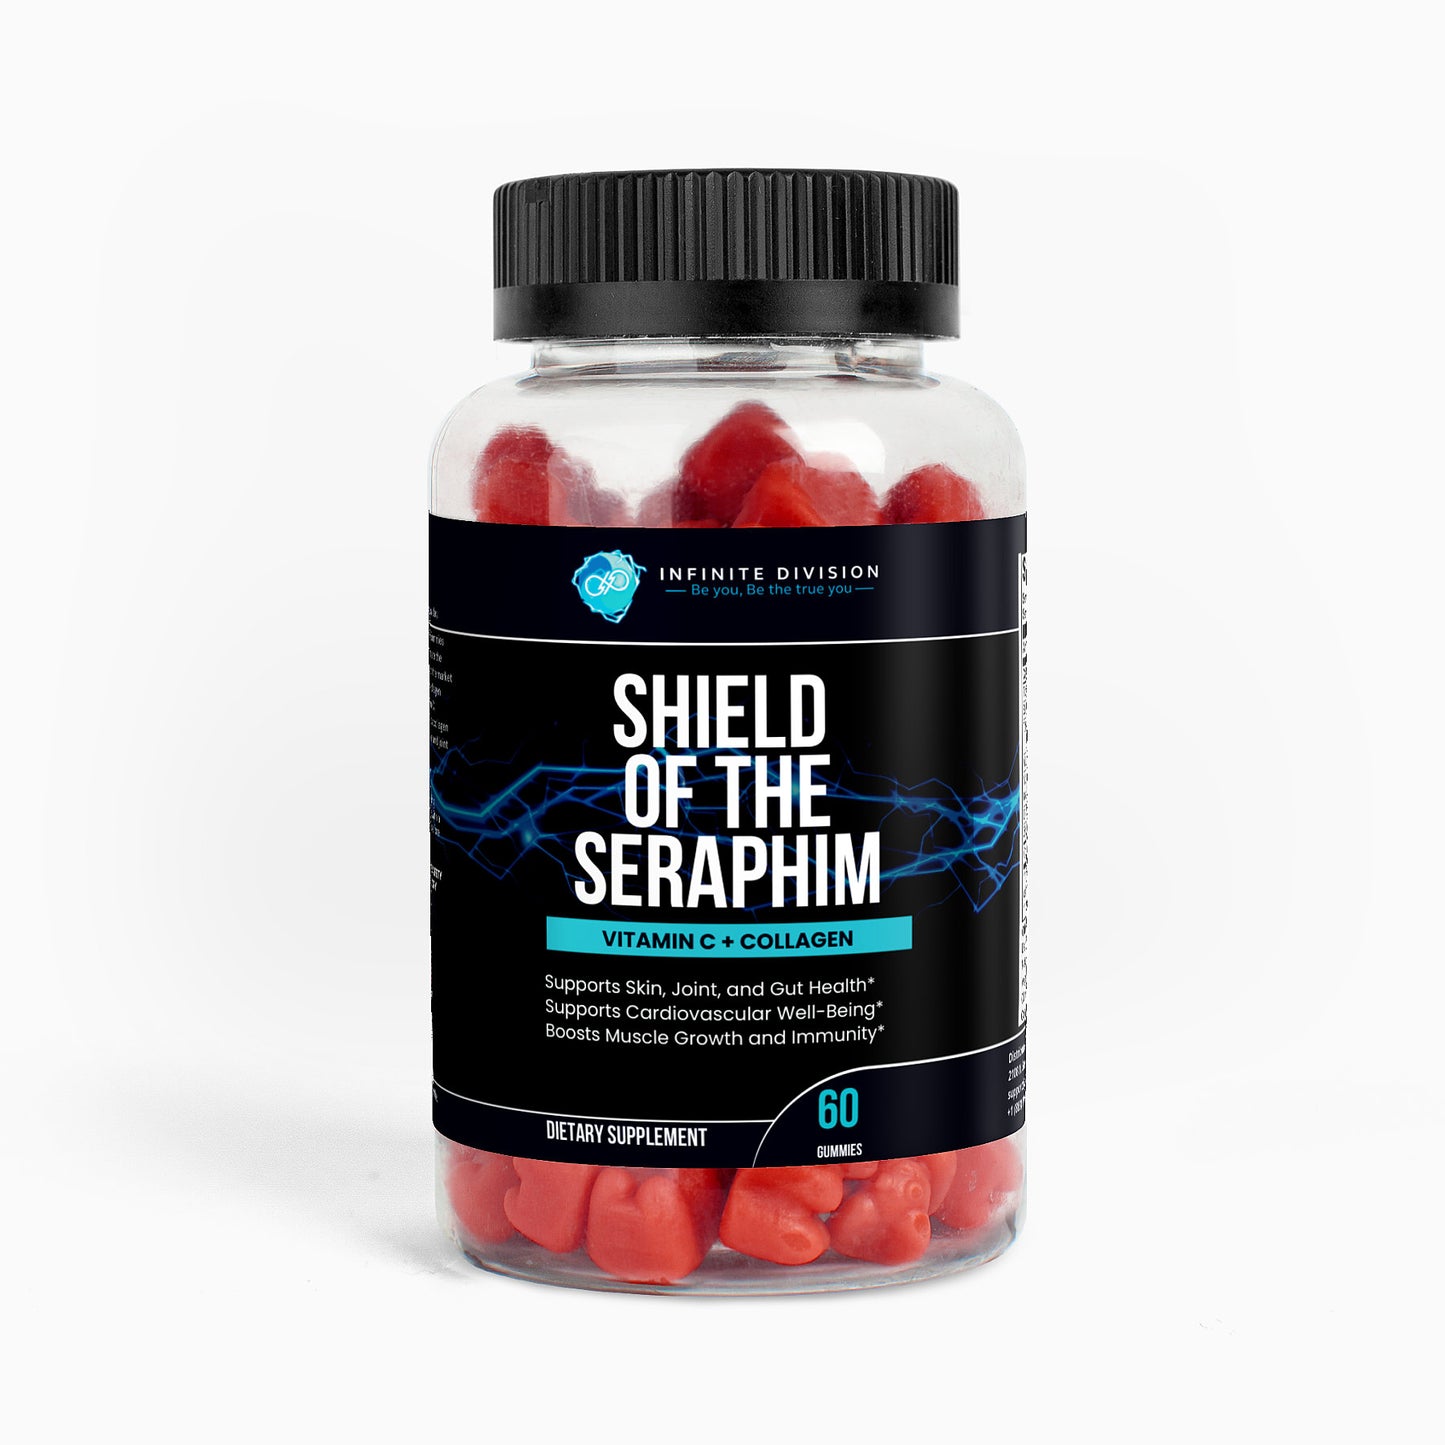 Shield of the Seraphim - Vitamin C + Collagen (Gummies)